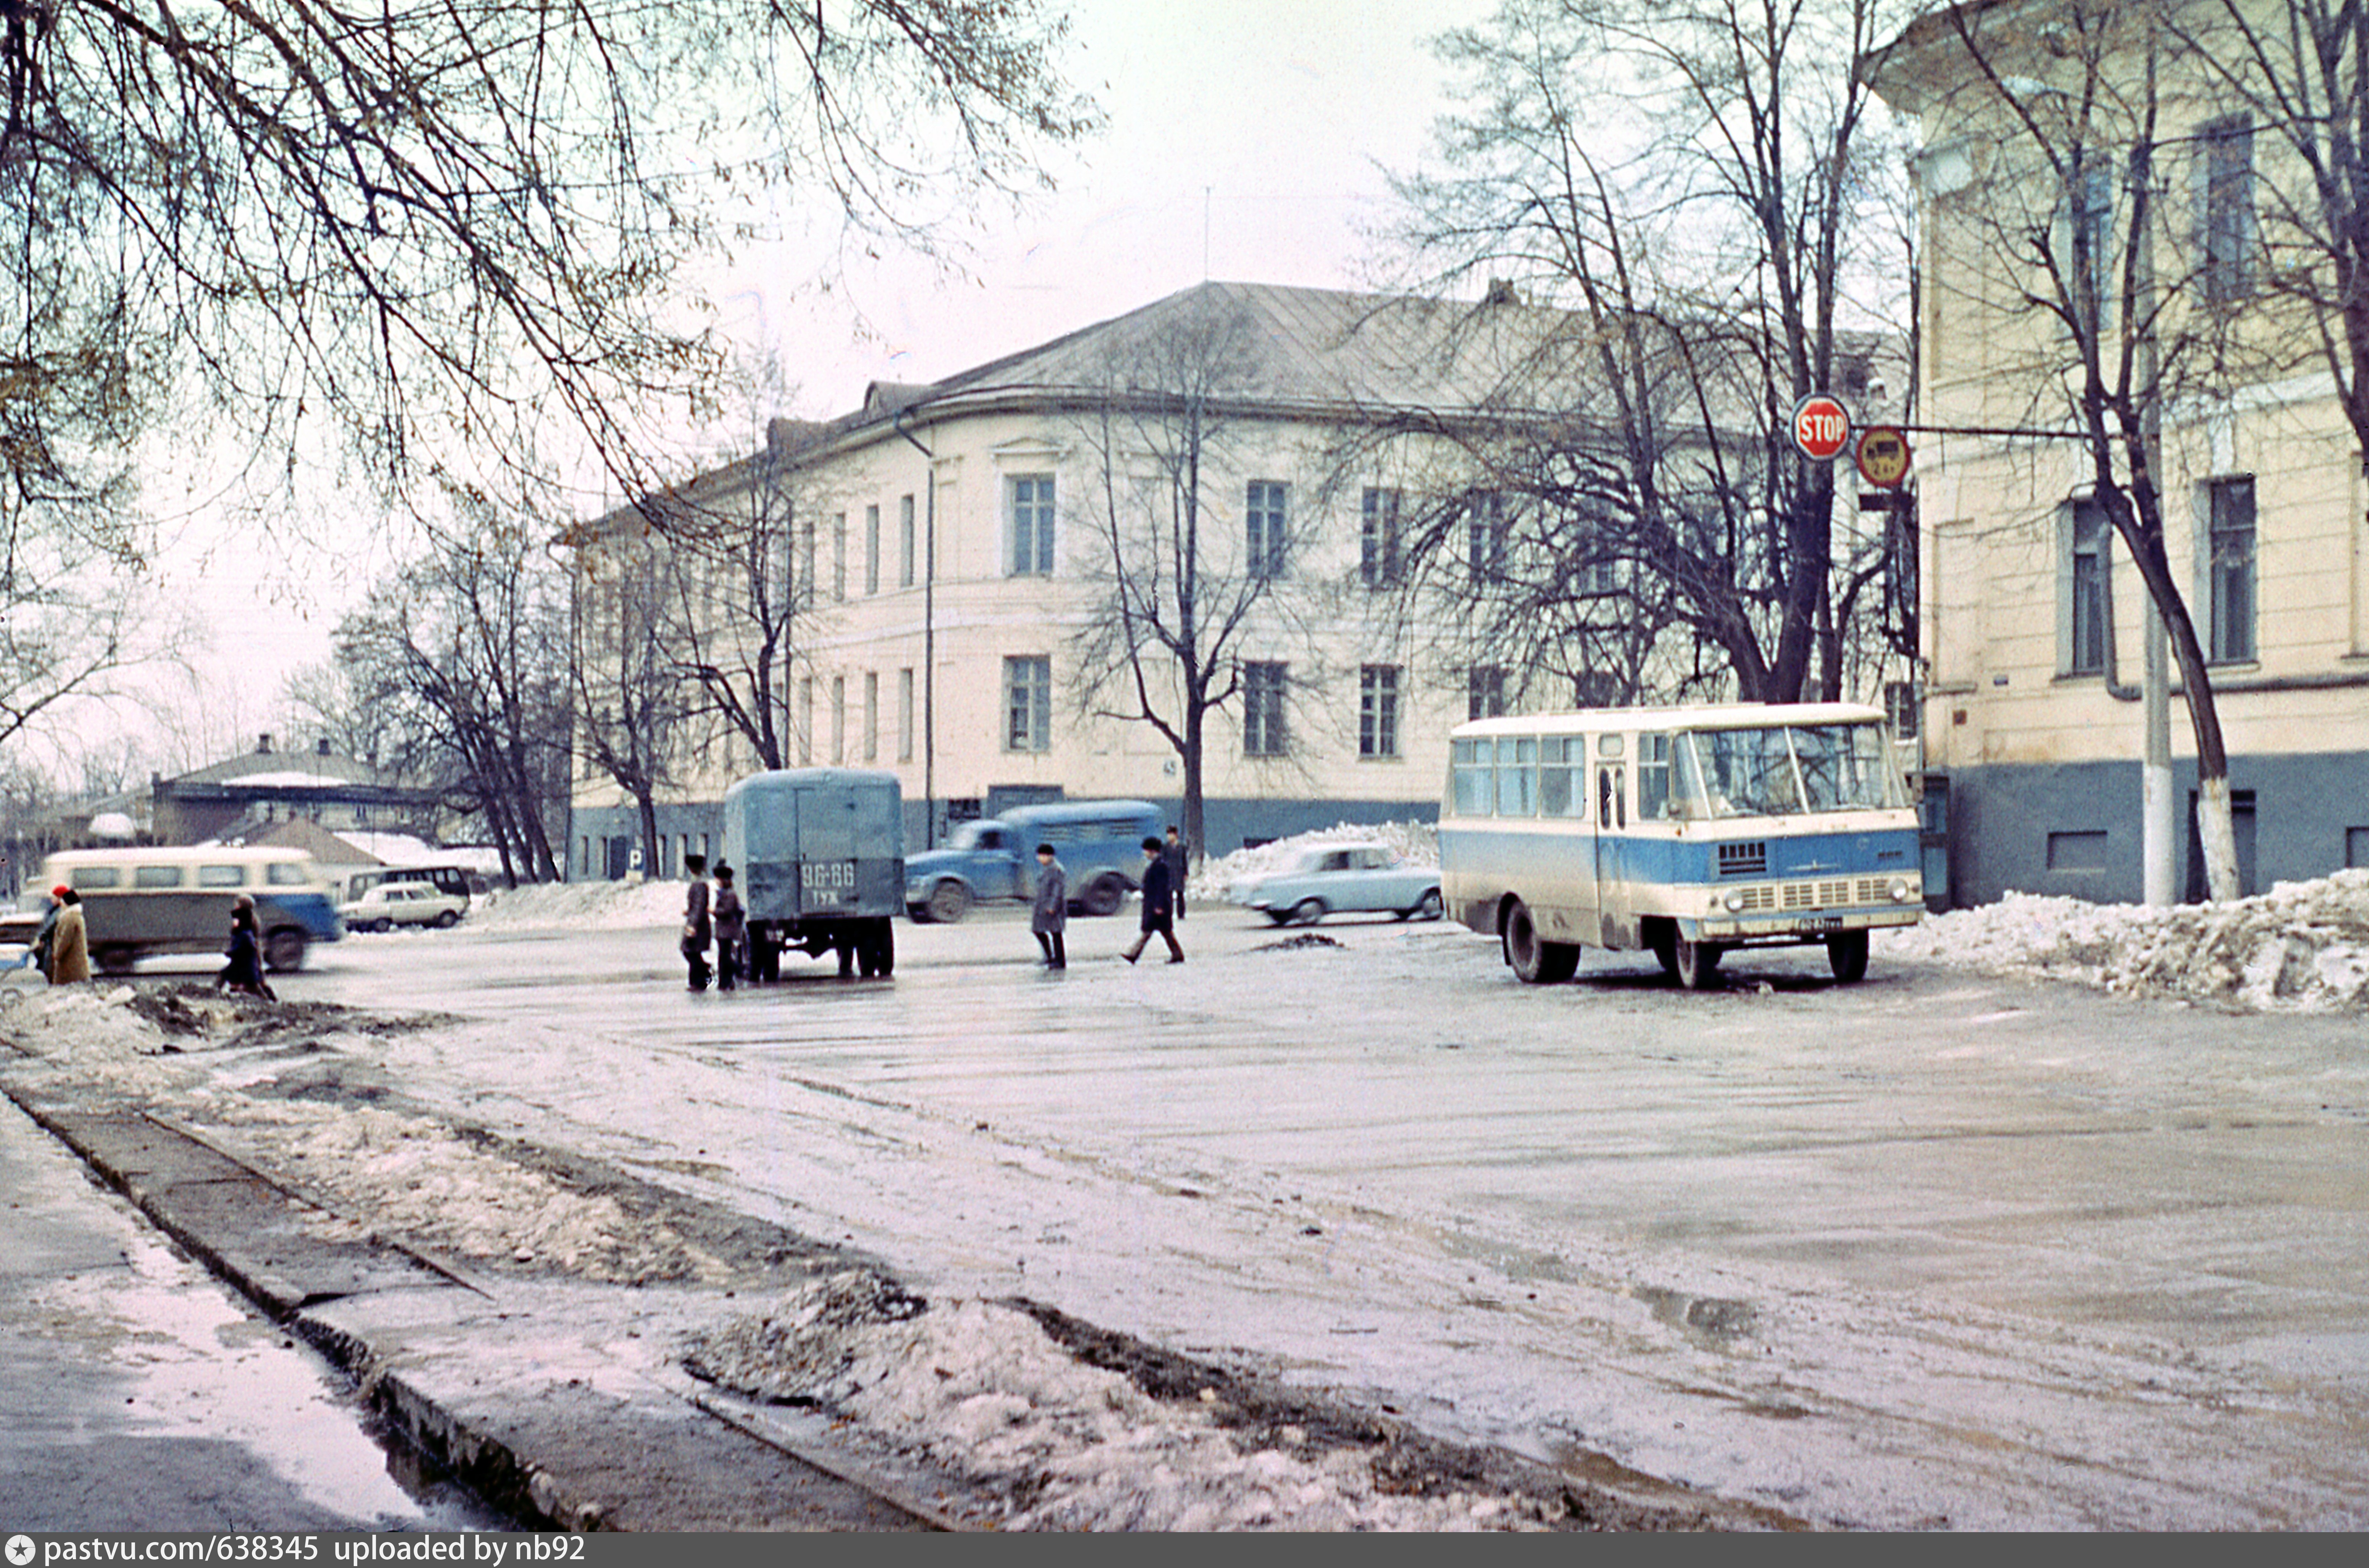 Тула проспект Ленина 1970